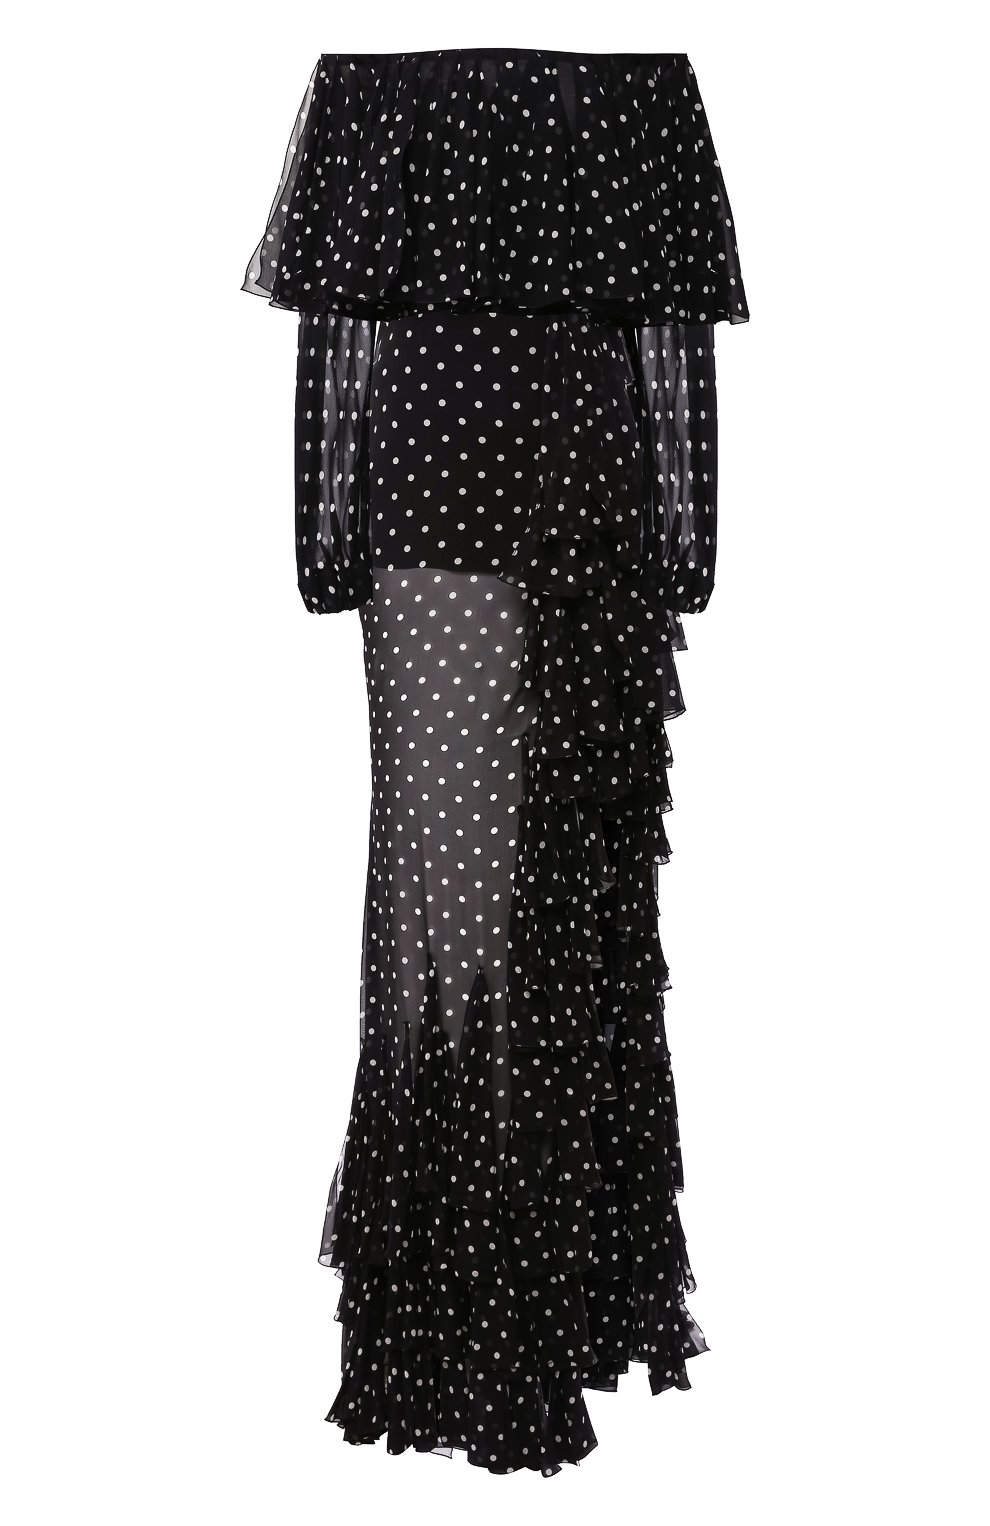 Платья Balmain, Шелковое платье Balmain, Мадагаскар, Чёрный, Подкладка-шелк: 100%; Шелк: 100%;, 11115324  - купить